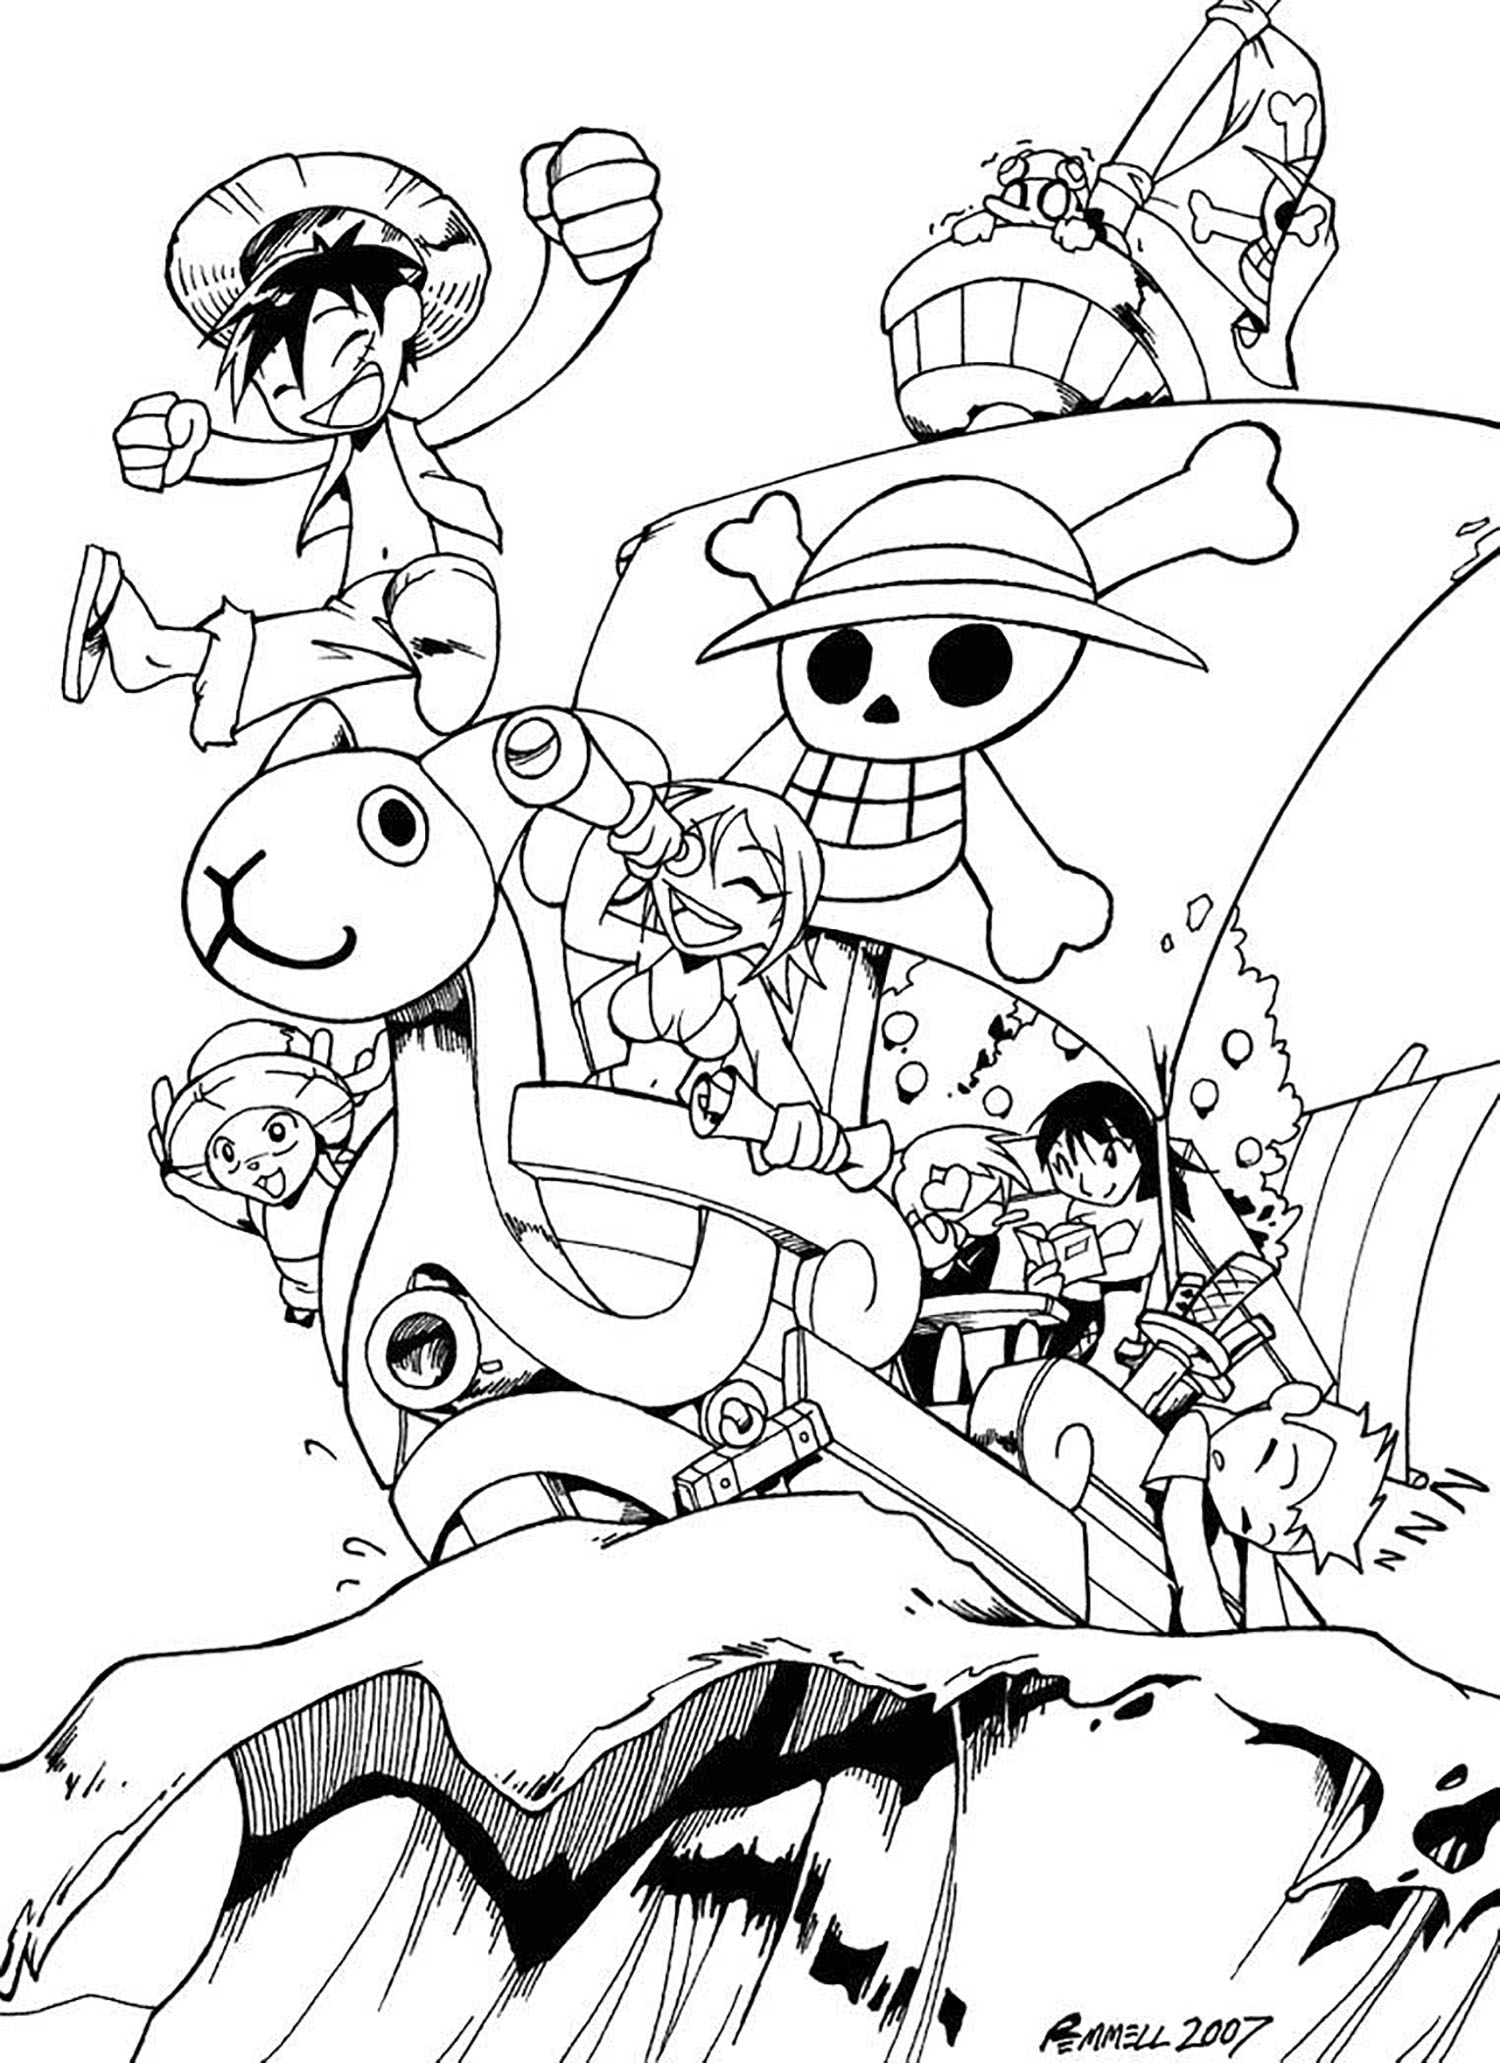 Tổng hợp các bức tranh tô màu One Piece cho bé